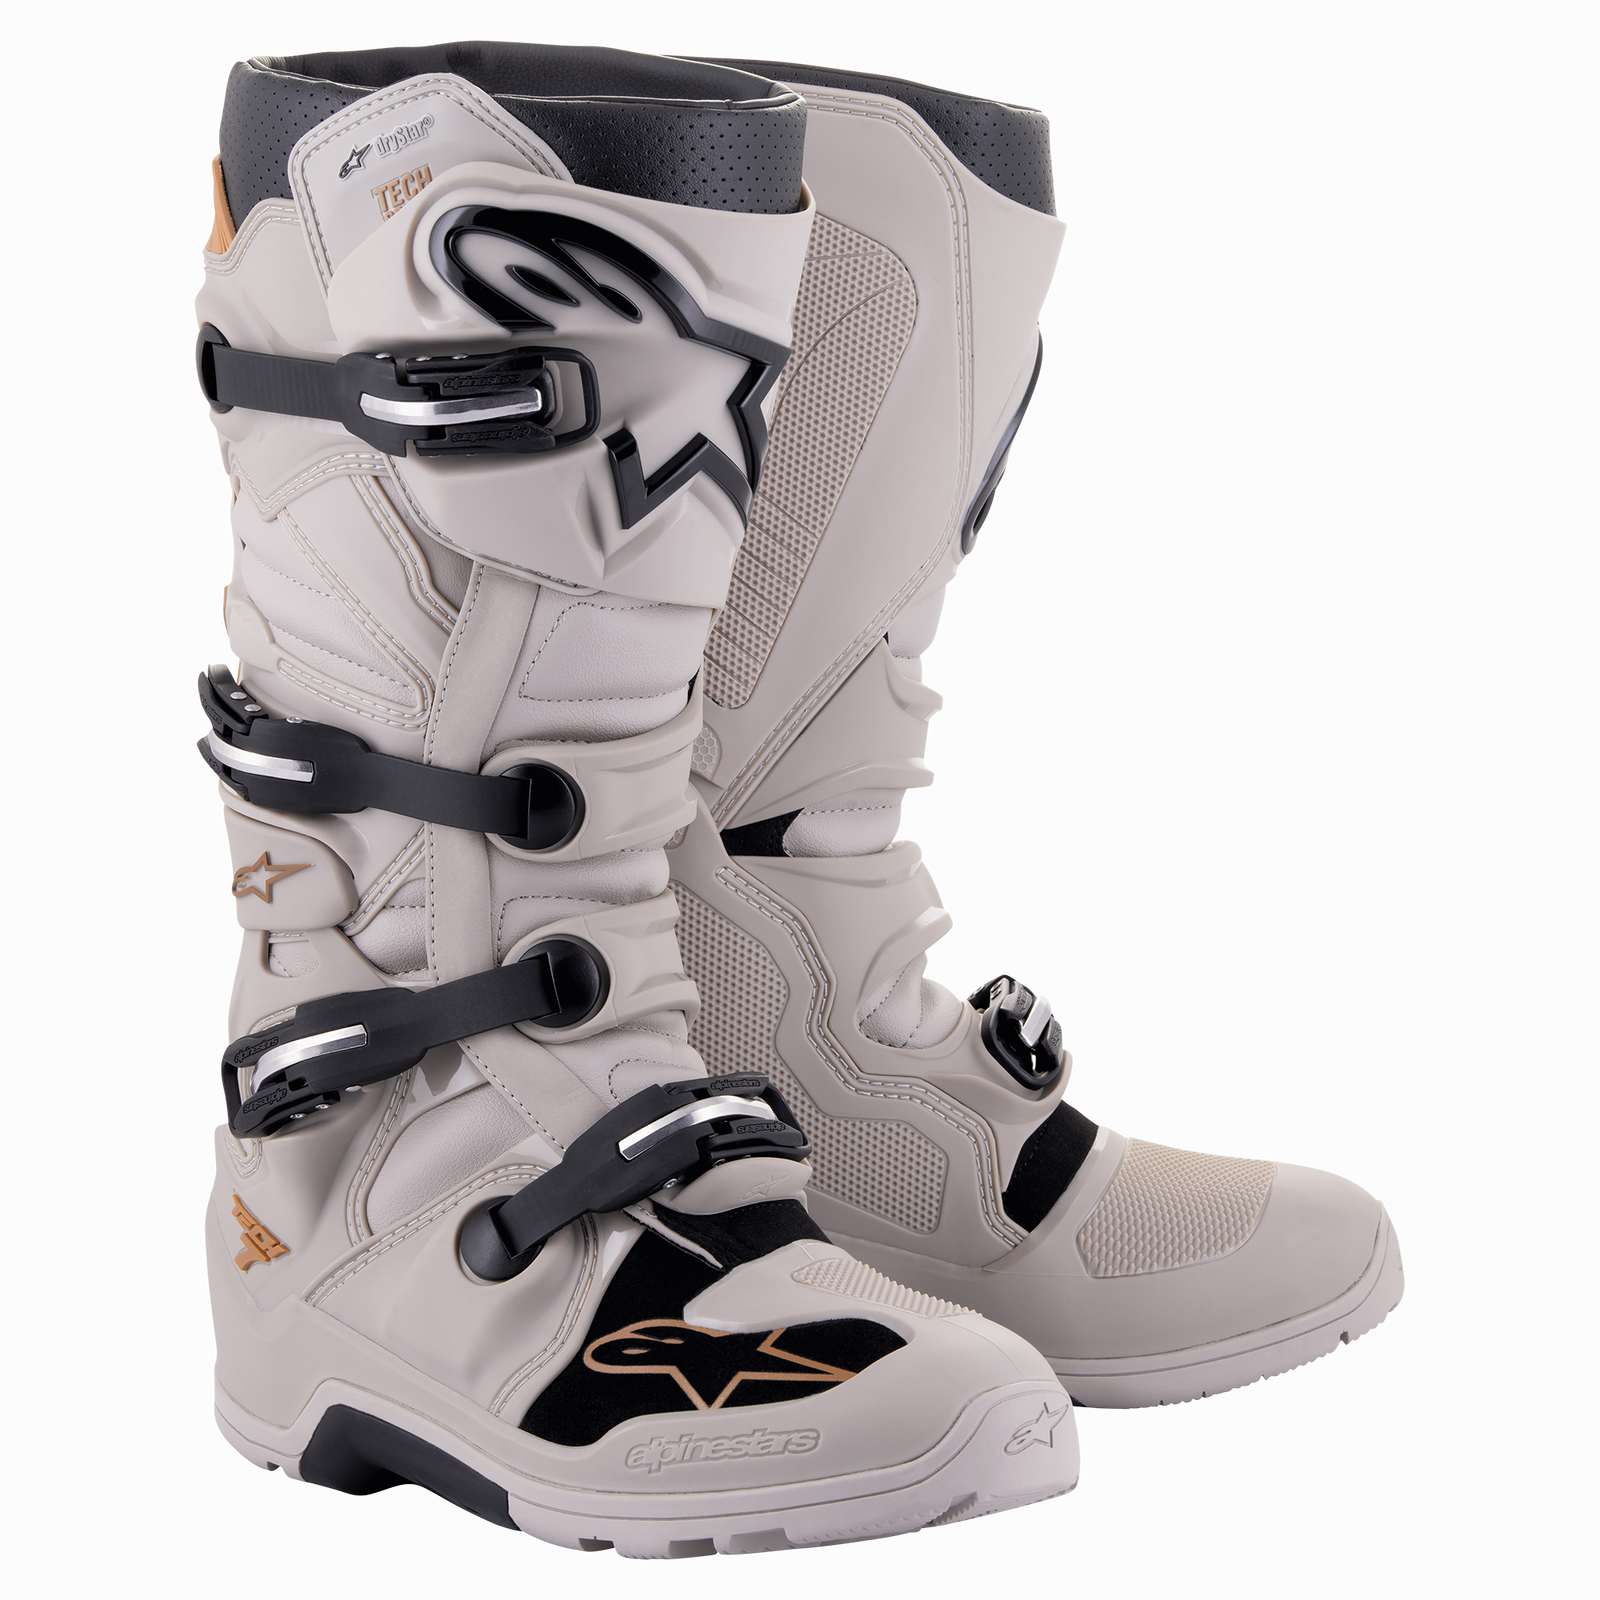 Tech 7 Enduro Drystar® Boots | Alpinestars | Alpinestars® Official 